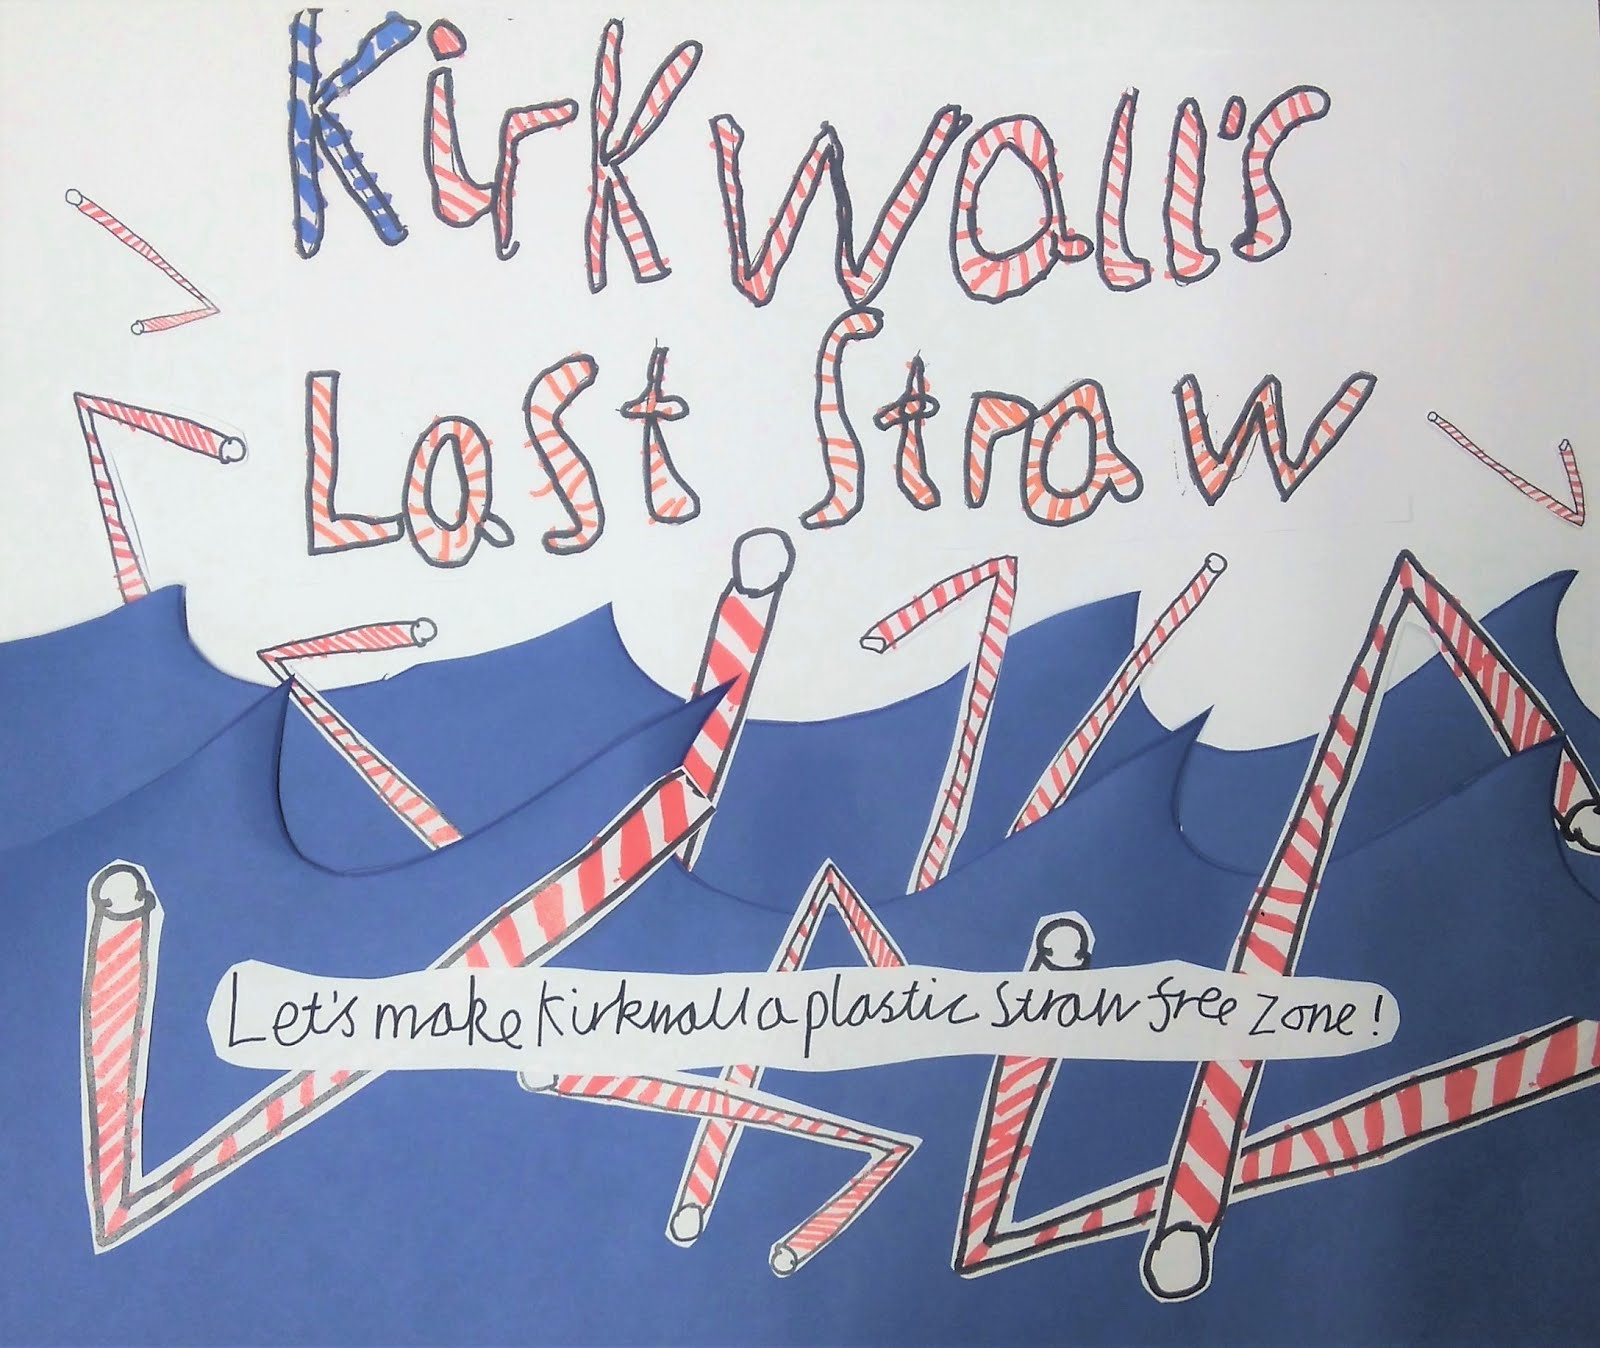 Kirkwall's Last Straw